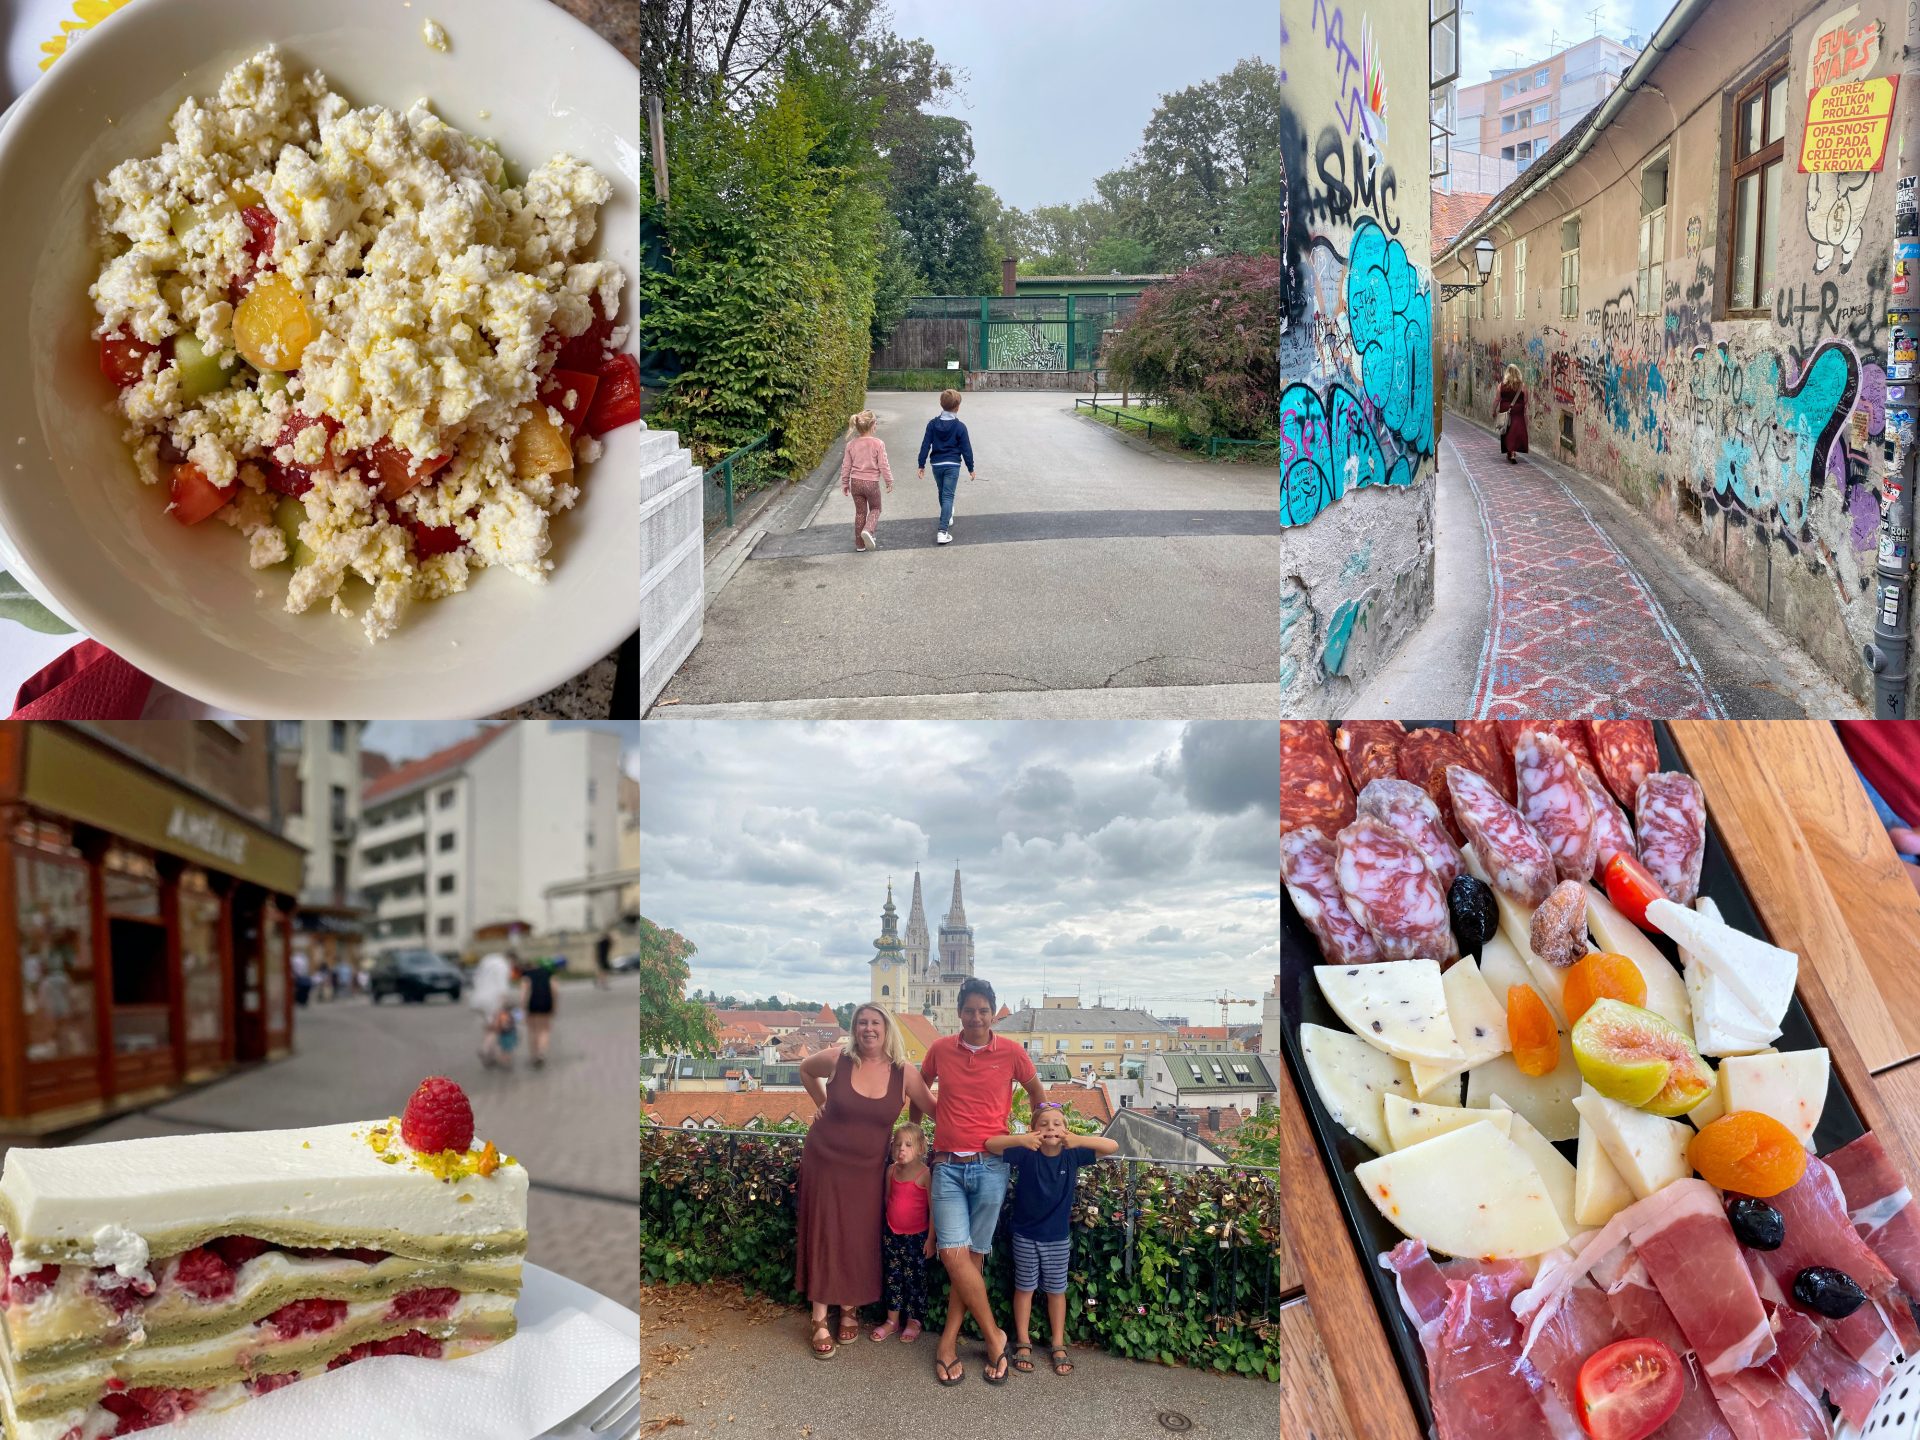 Stedentrip Zagreb tips in de zomer – Van eten en drinken tot activiteiten met kinderen - Foodblog Foodinista